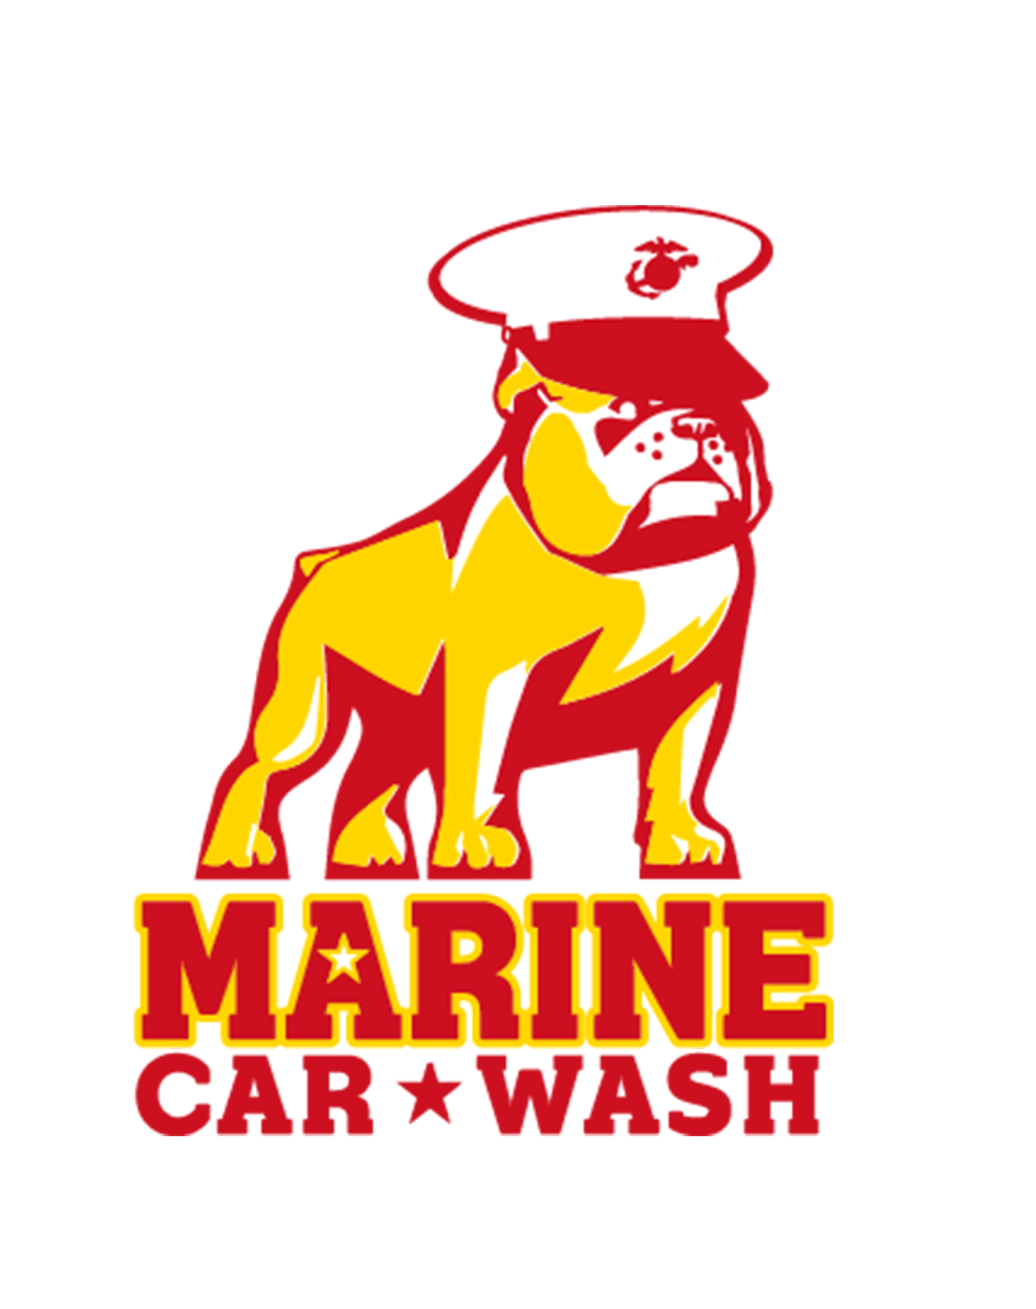 Marine carwash in HAWAII